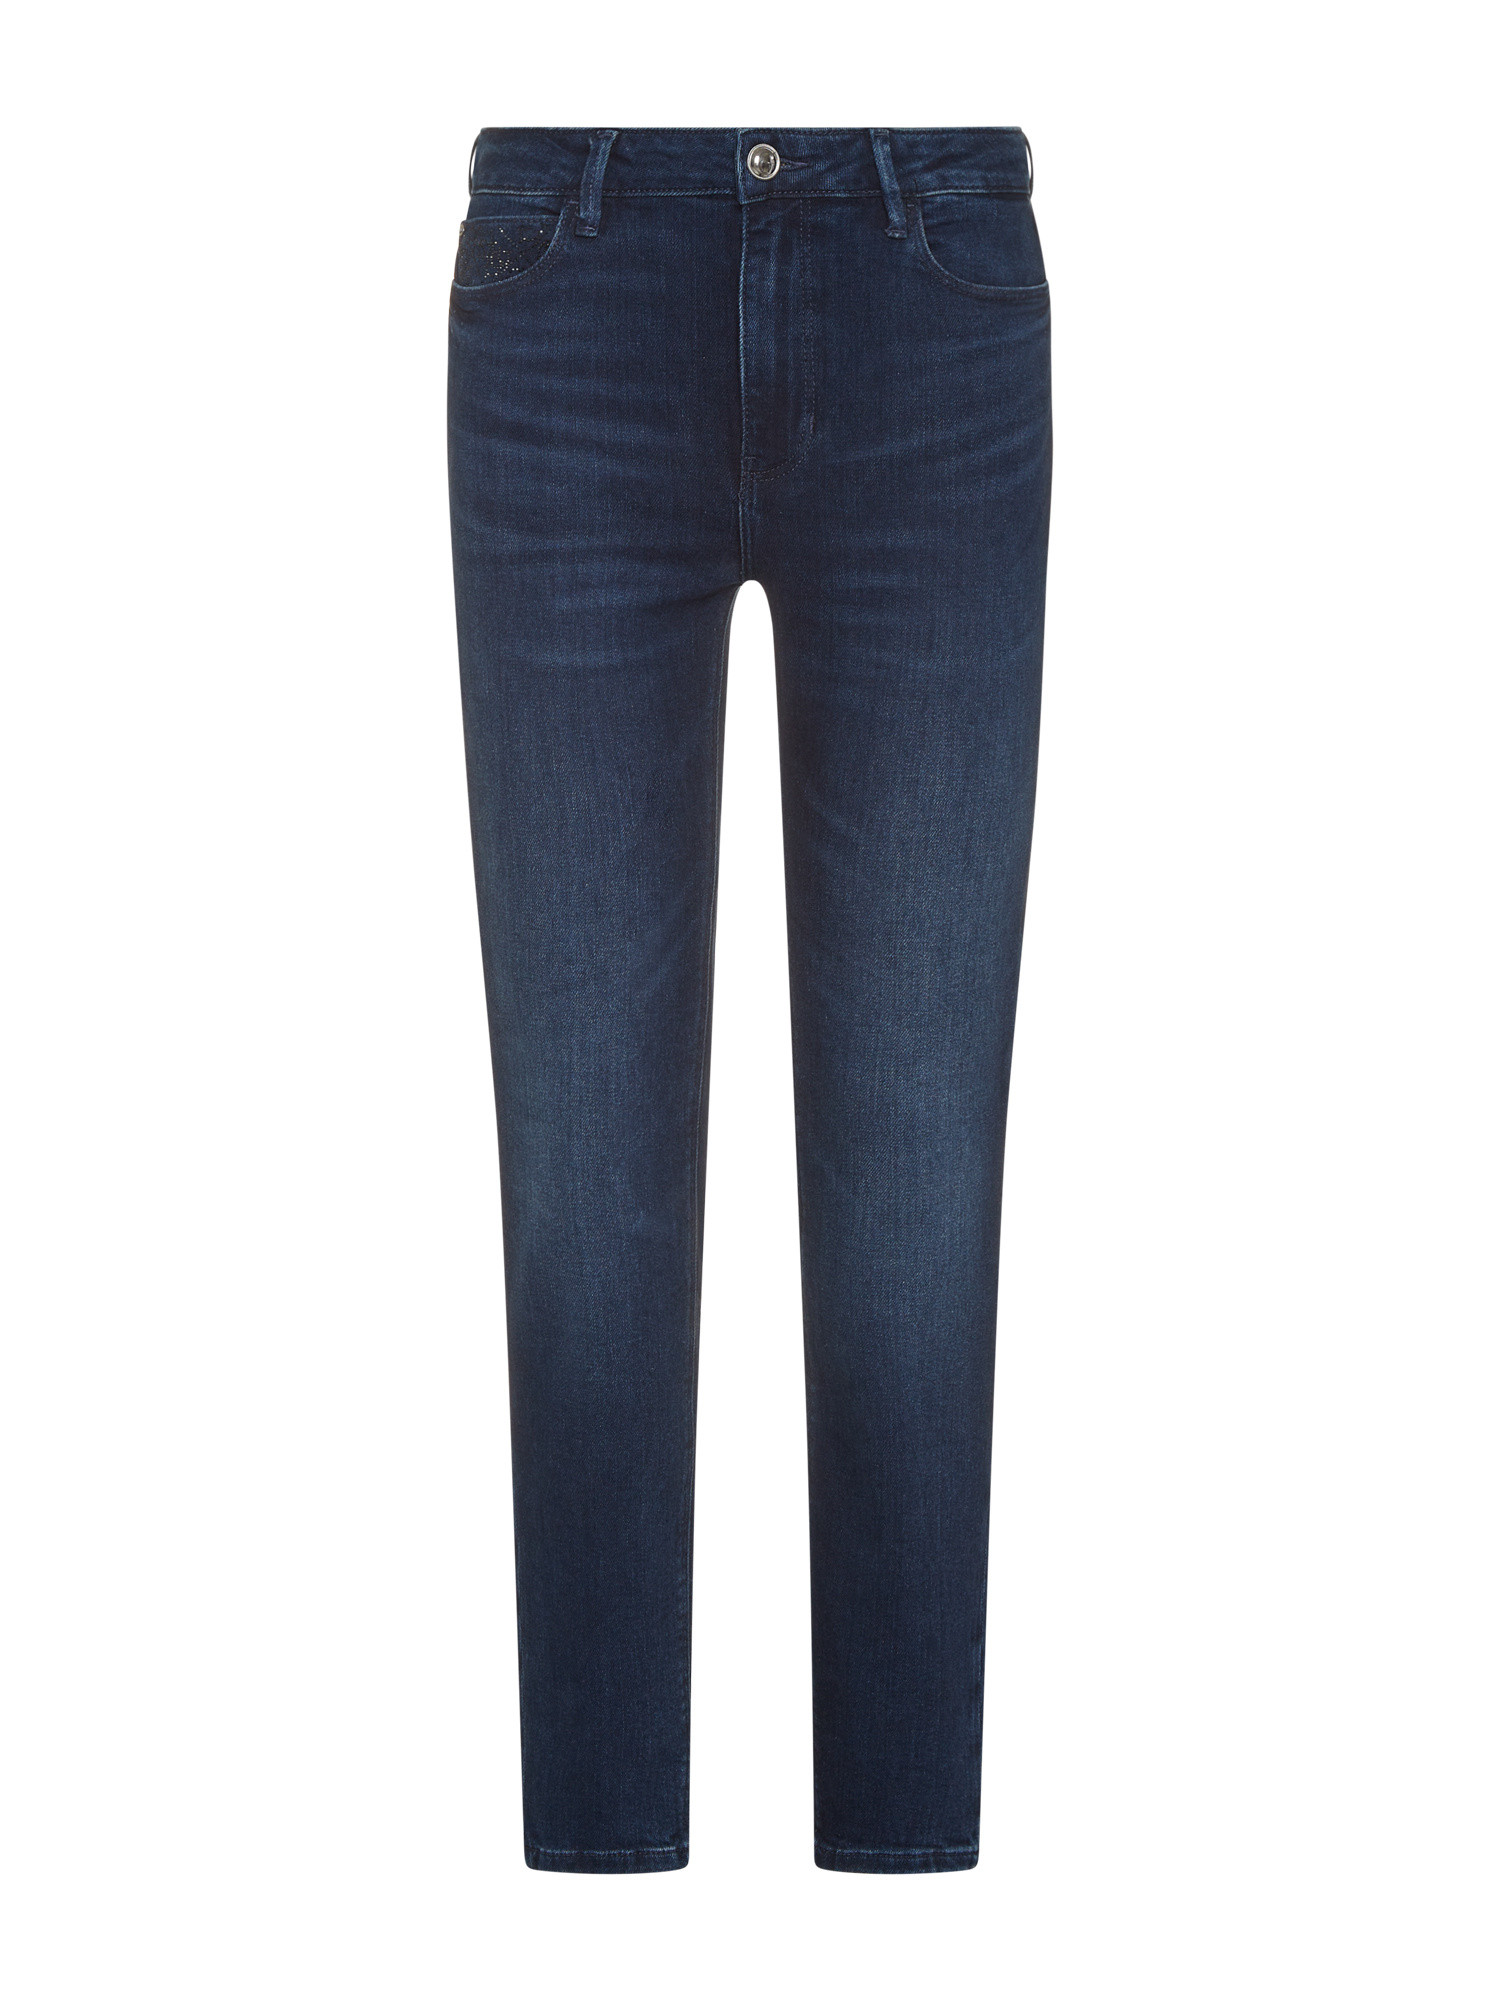 Guess - Five pocket skinny jeans, Dark Blue, large image number 0